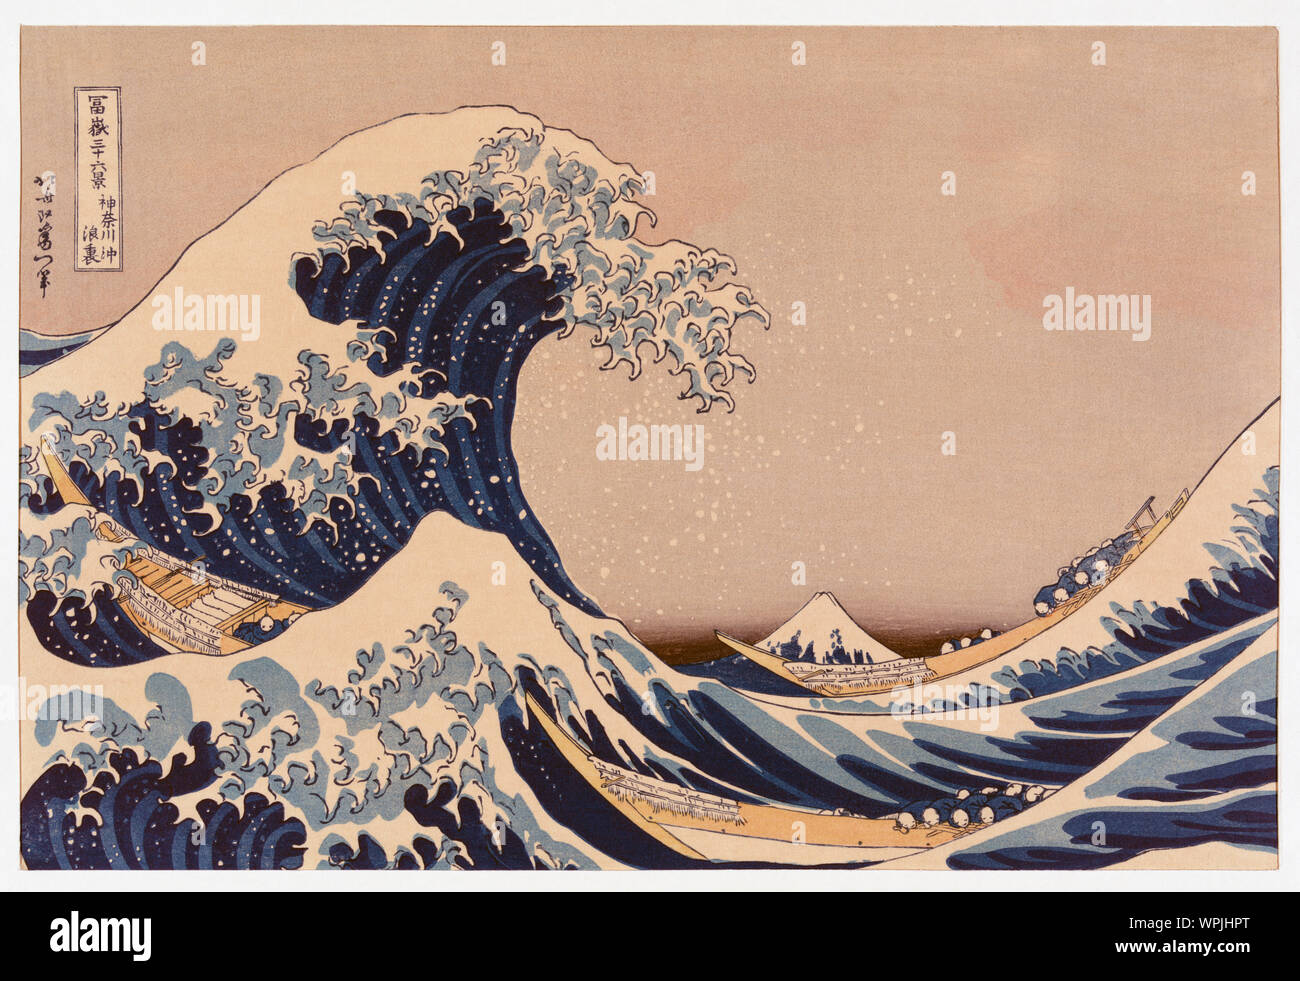 La grande onda di Kanagawa off conosciuta anche come la grande onda o semplicemente l'onda dopo una stampa woodblock dal giapponese ukiyo-e artista Katsushika Hokusai, 1760 - 1849. La grande onda di Kanagawa off è diventato il più noto di una serie di stampa noti come trentasei vista del Monte Fuji creato da Hokusai all'inizio del 1830. Foto Stock